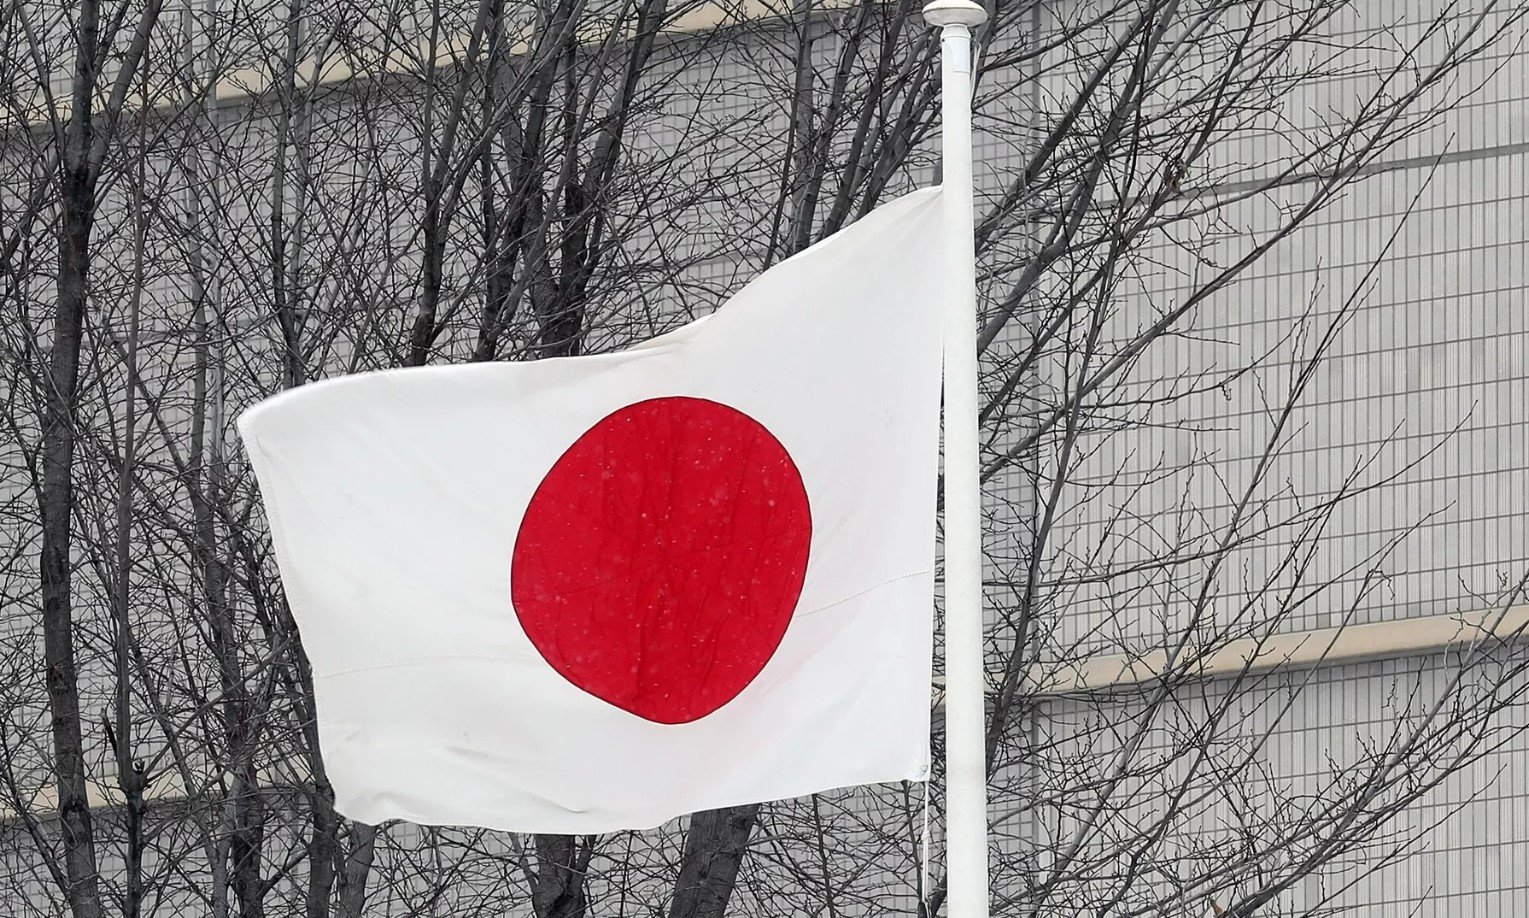 Ճապոնիան 2 միլիոն դոլար կհատկացնի Լեռնային Ղարաբաղից բռնի տեղահանվածների օգնության համար